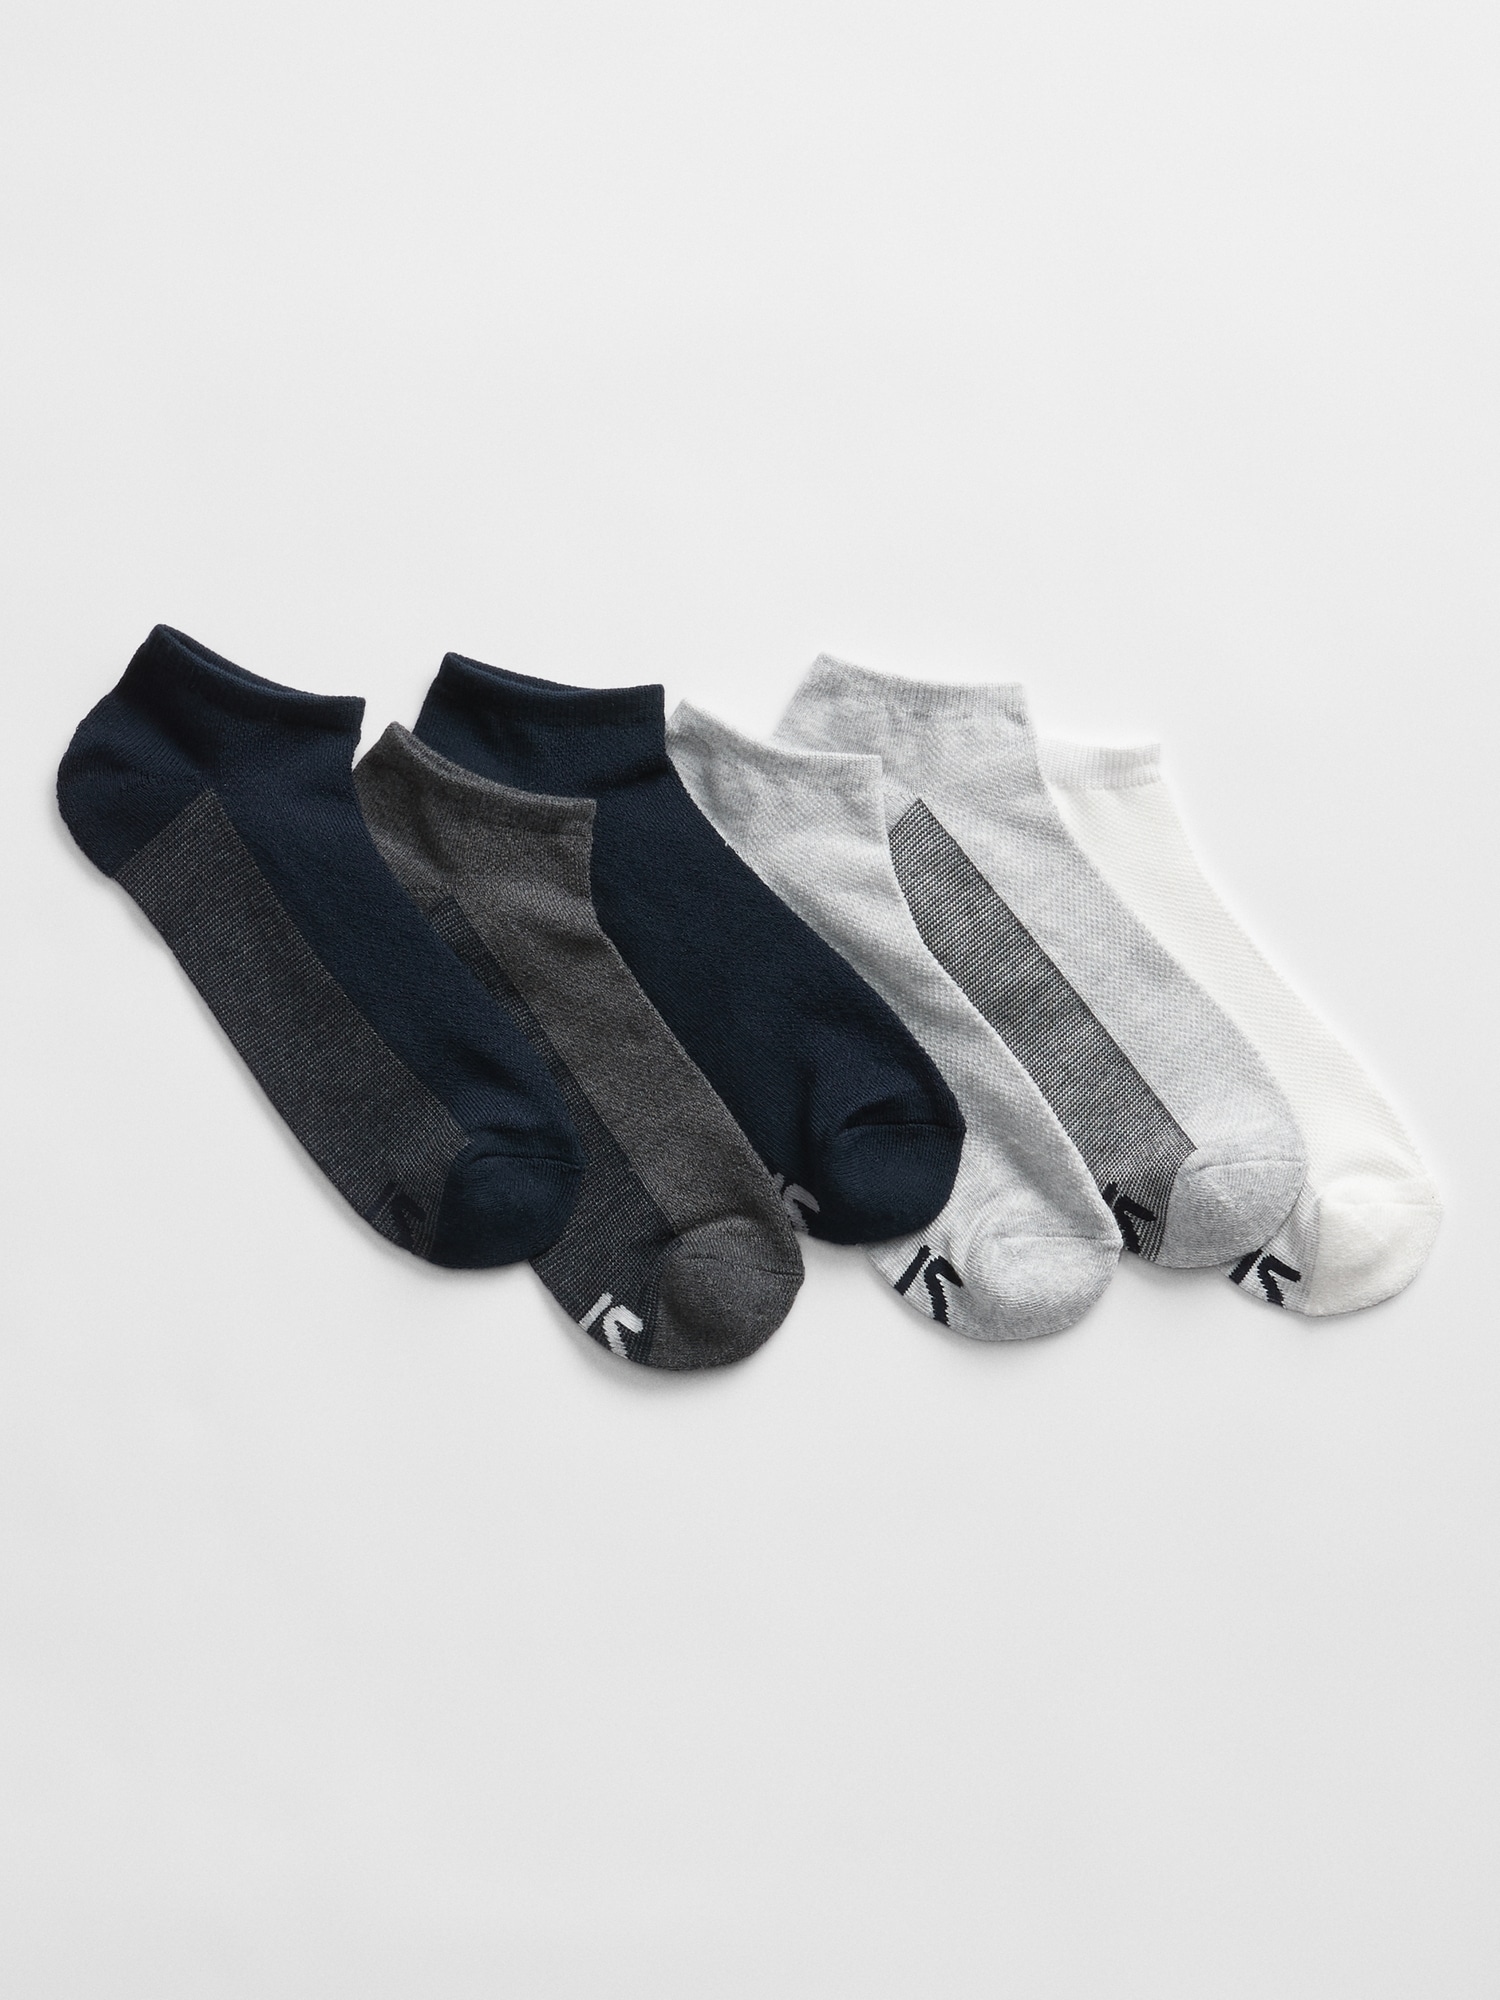 GapFit Colorblock Ankle Socks (6-pack) | Gap Factory